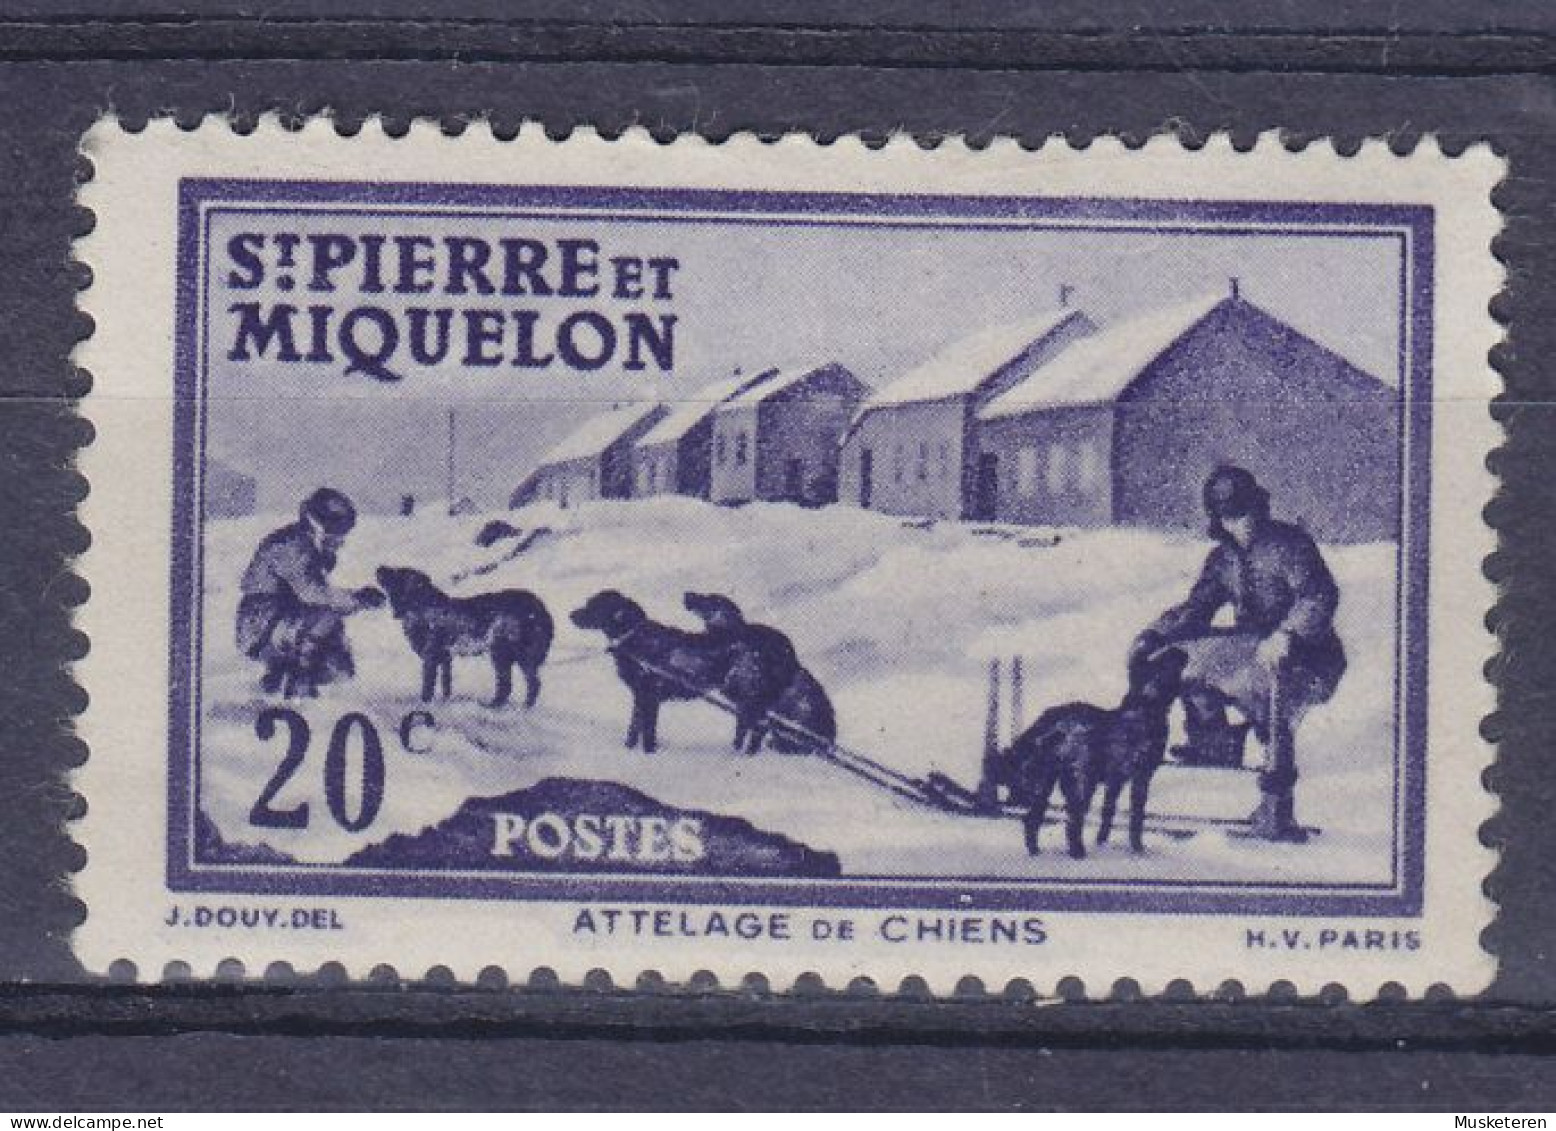 Saint-Pierre & Miquelon 1938 Mi. 176,  20c. Hundegespann Attelage Du Chiens, MH* - Nuevos